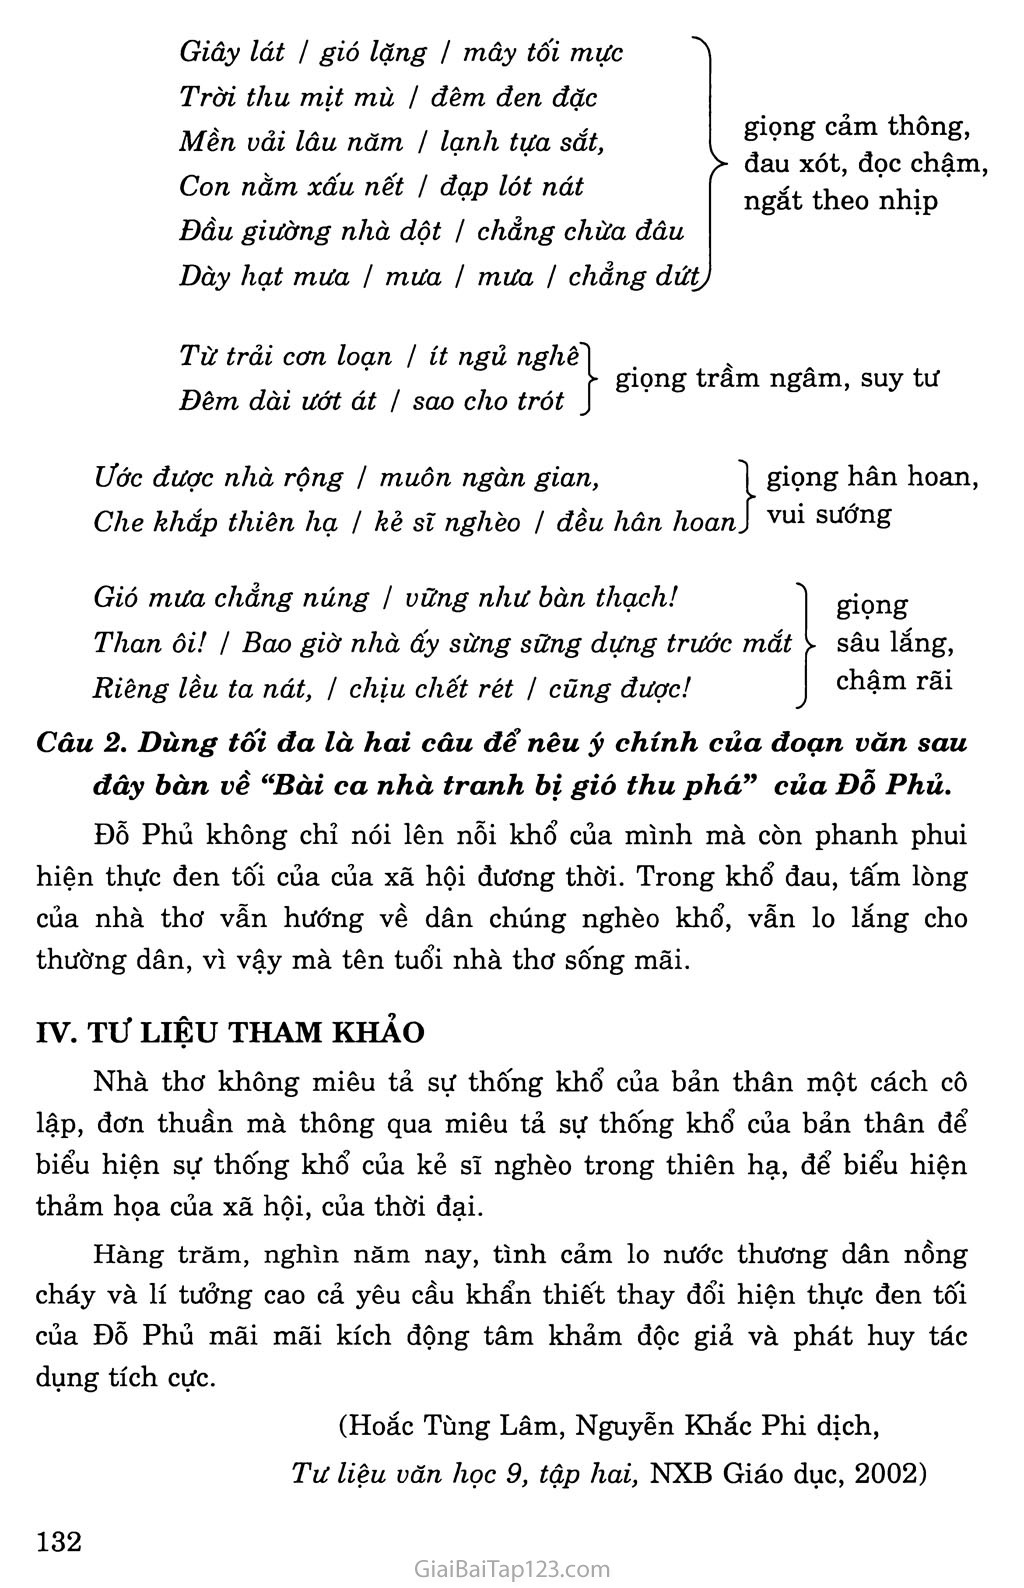 Bài ca nhà tranh bị gió thu phá (Mao ốc vị thu phong sở phá ca) trang 4